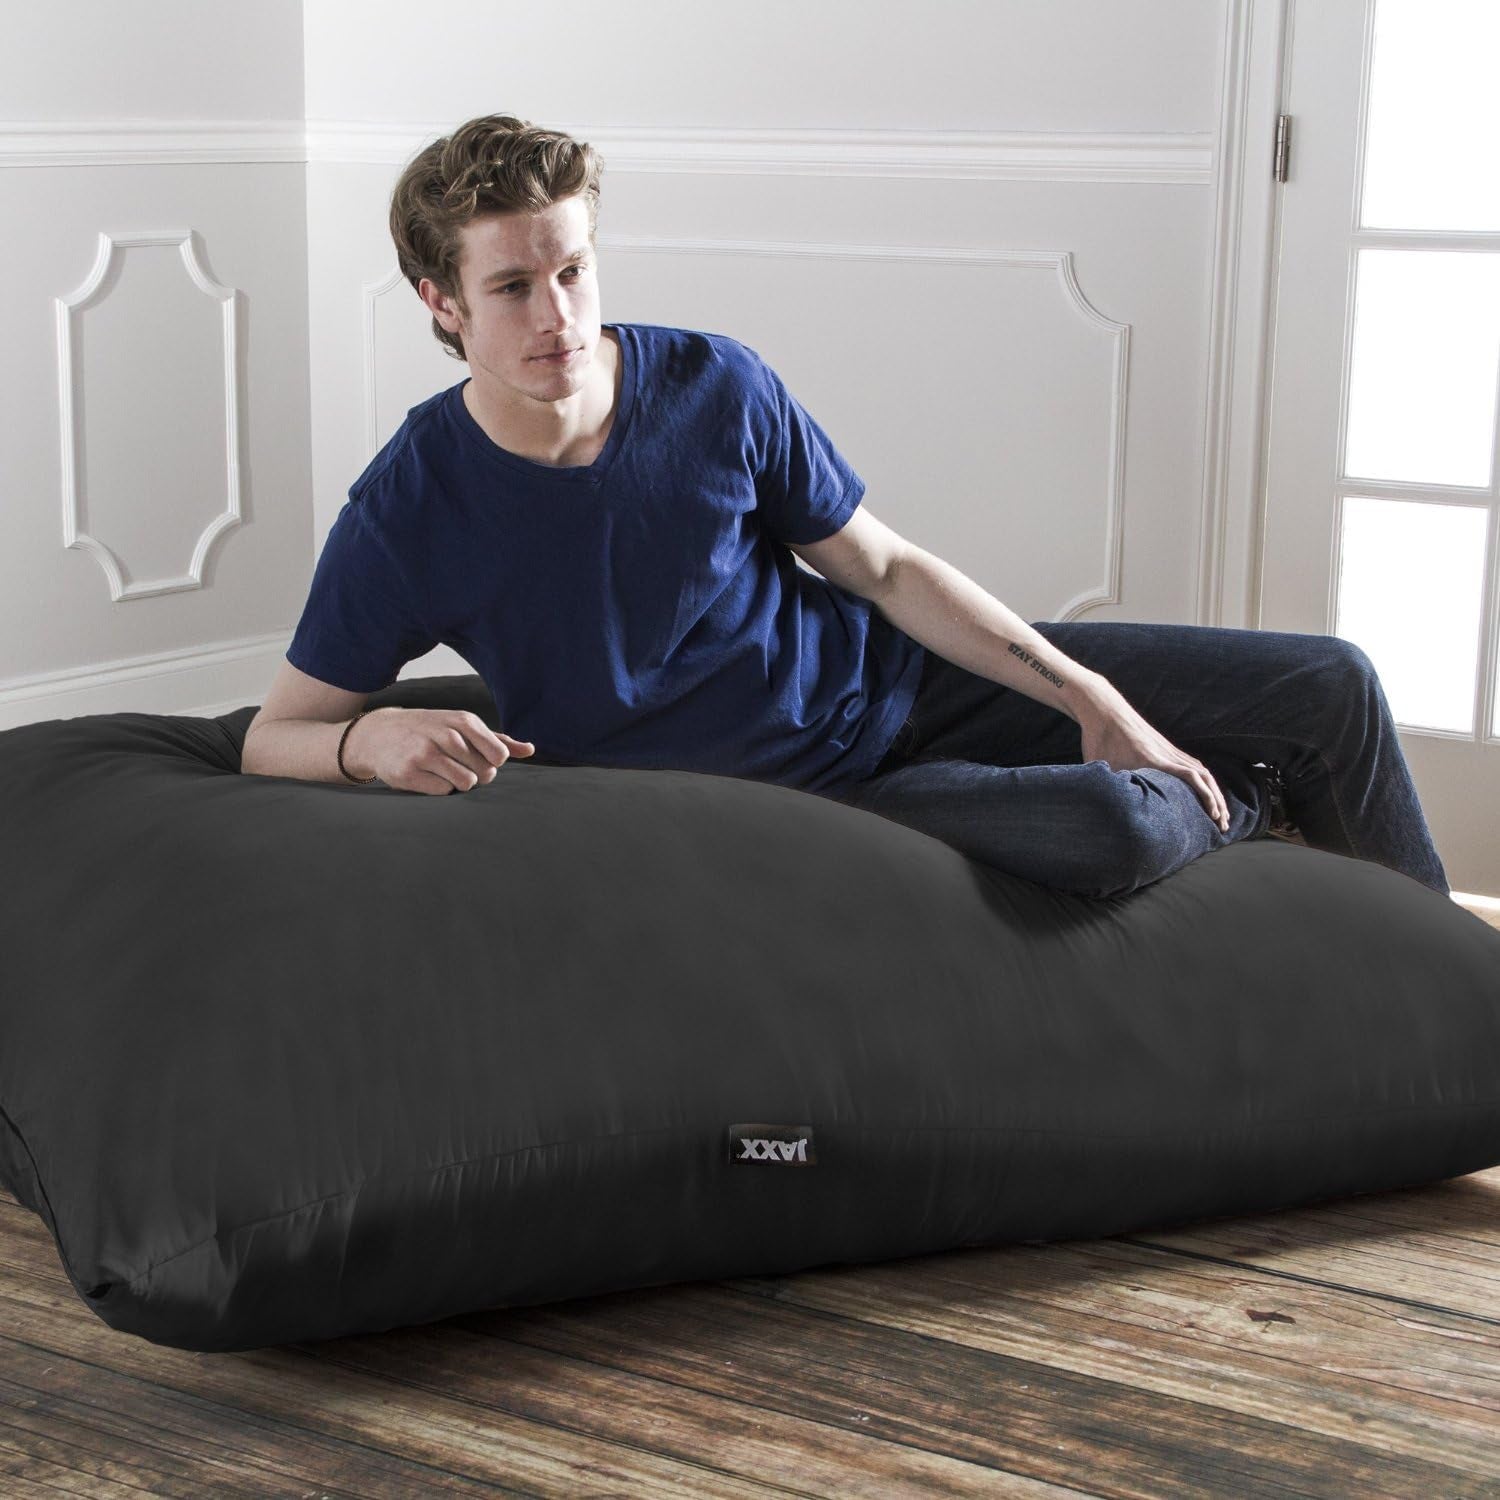 Pillow Saxx 5.5-Foot - Huge Bean Bag Floor Pillow and Lounger, Black